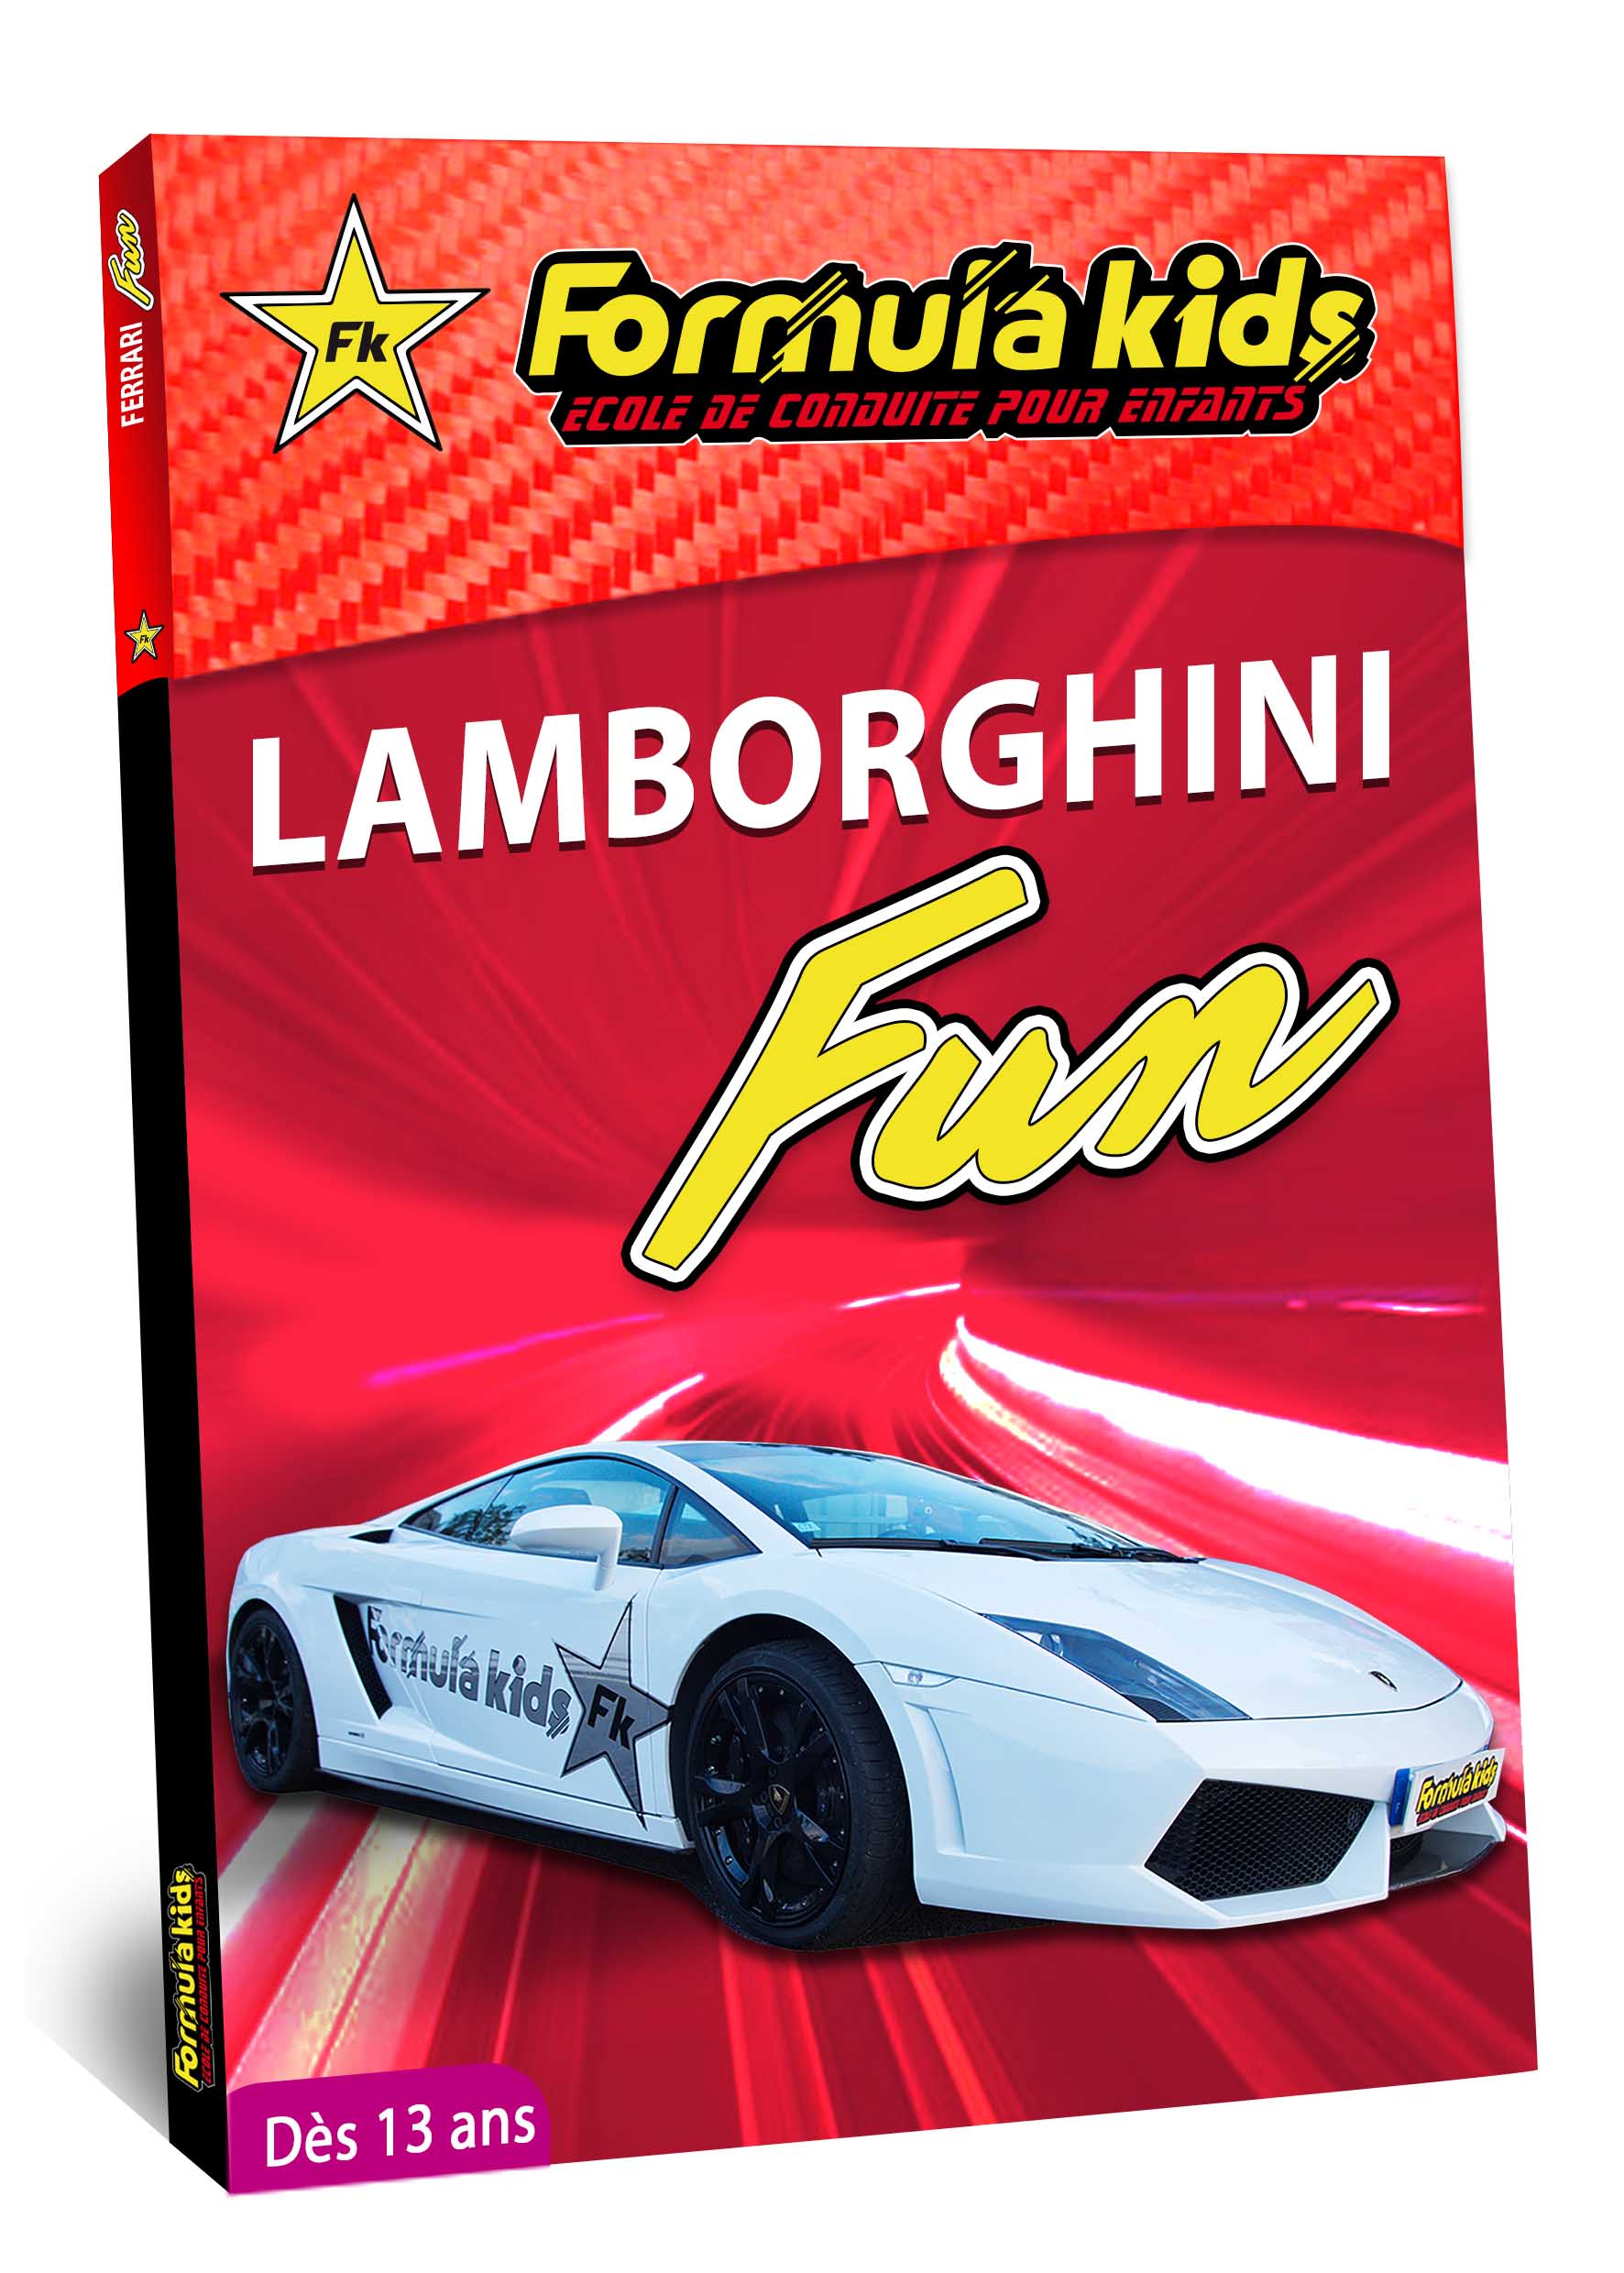 Lamborghini Fun - Conduire une Lamborghini dès 7 ans - Formula Kids - Stage de conduite enfant - Stage de pilotage sur As'Phalte - Stage Junior - Gallardo LP 560 -